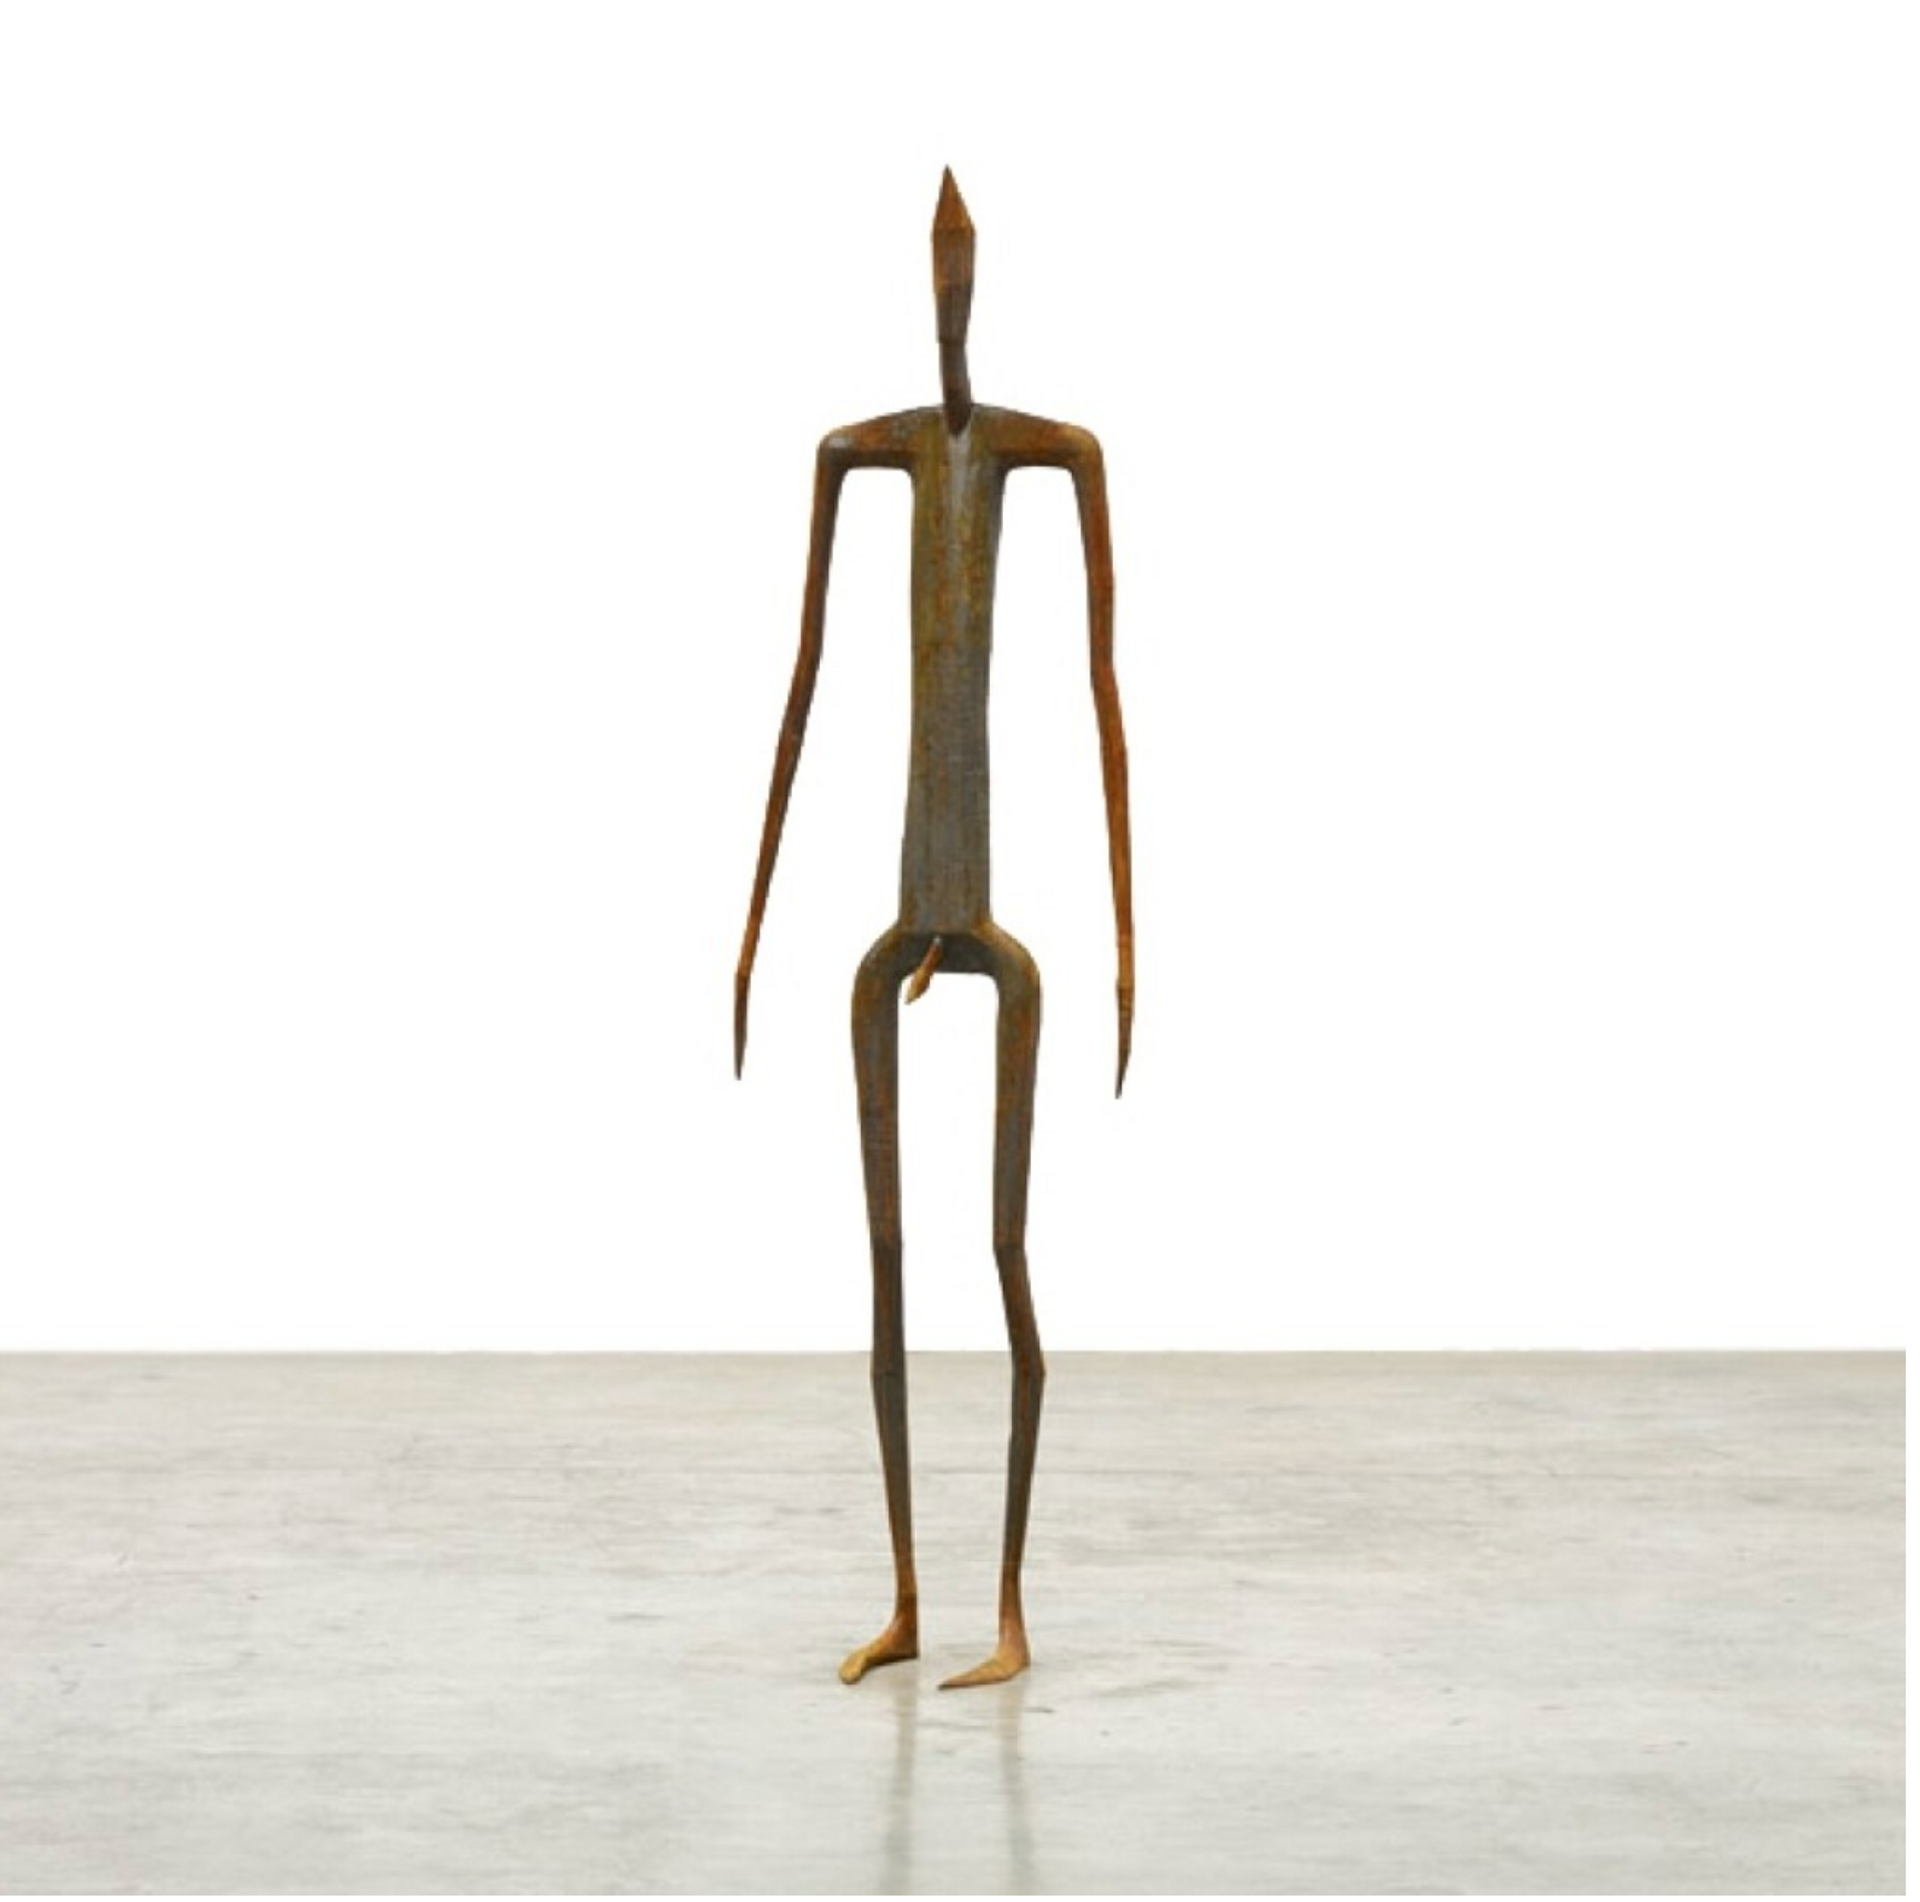 An outline cast iron sculpture of a standing human figure.